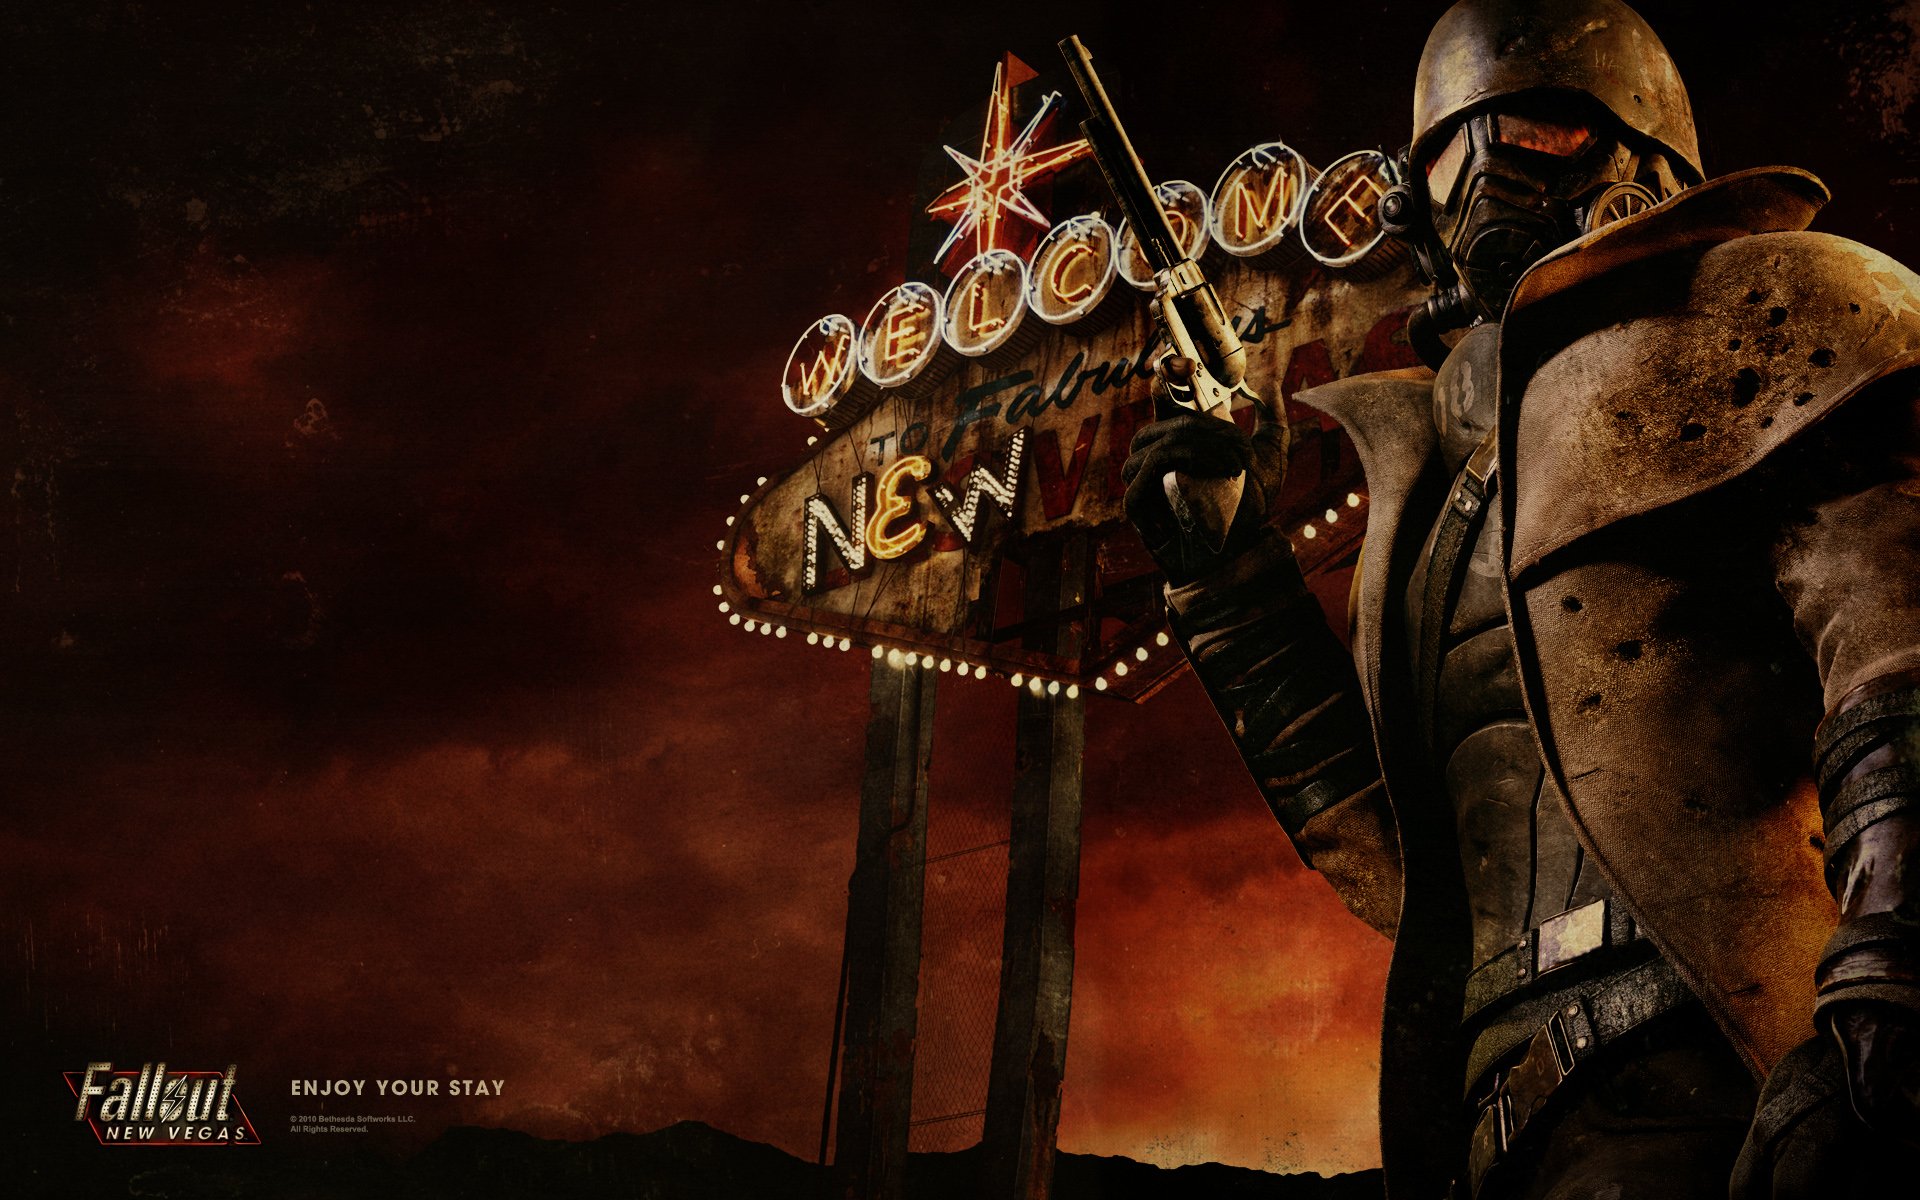 fallout new vegas fondo de pantalla hd,juego de acción y aventura,cg artwork,juego de pc,composición digital,sombrerería